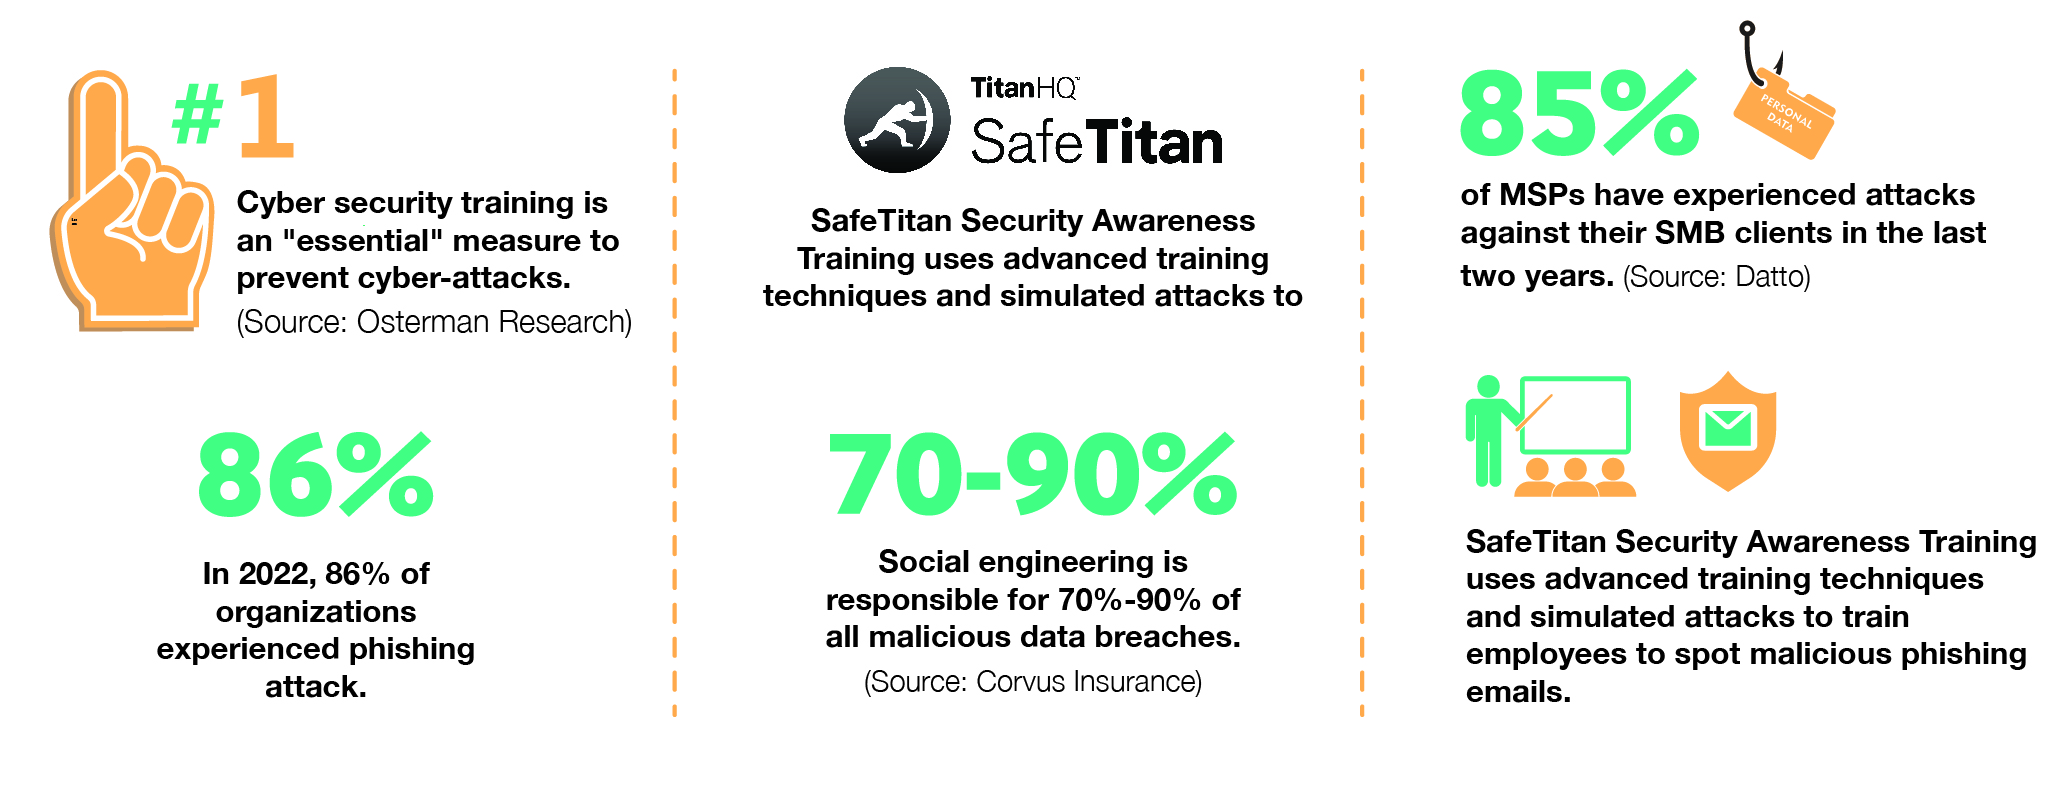 SafeTitan Security Awareness Training